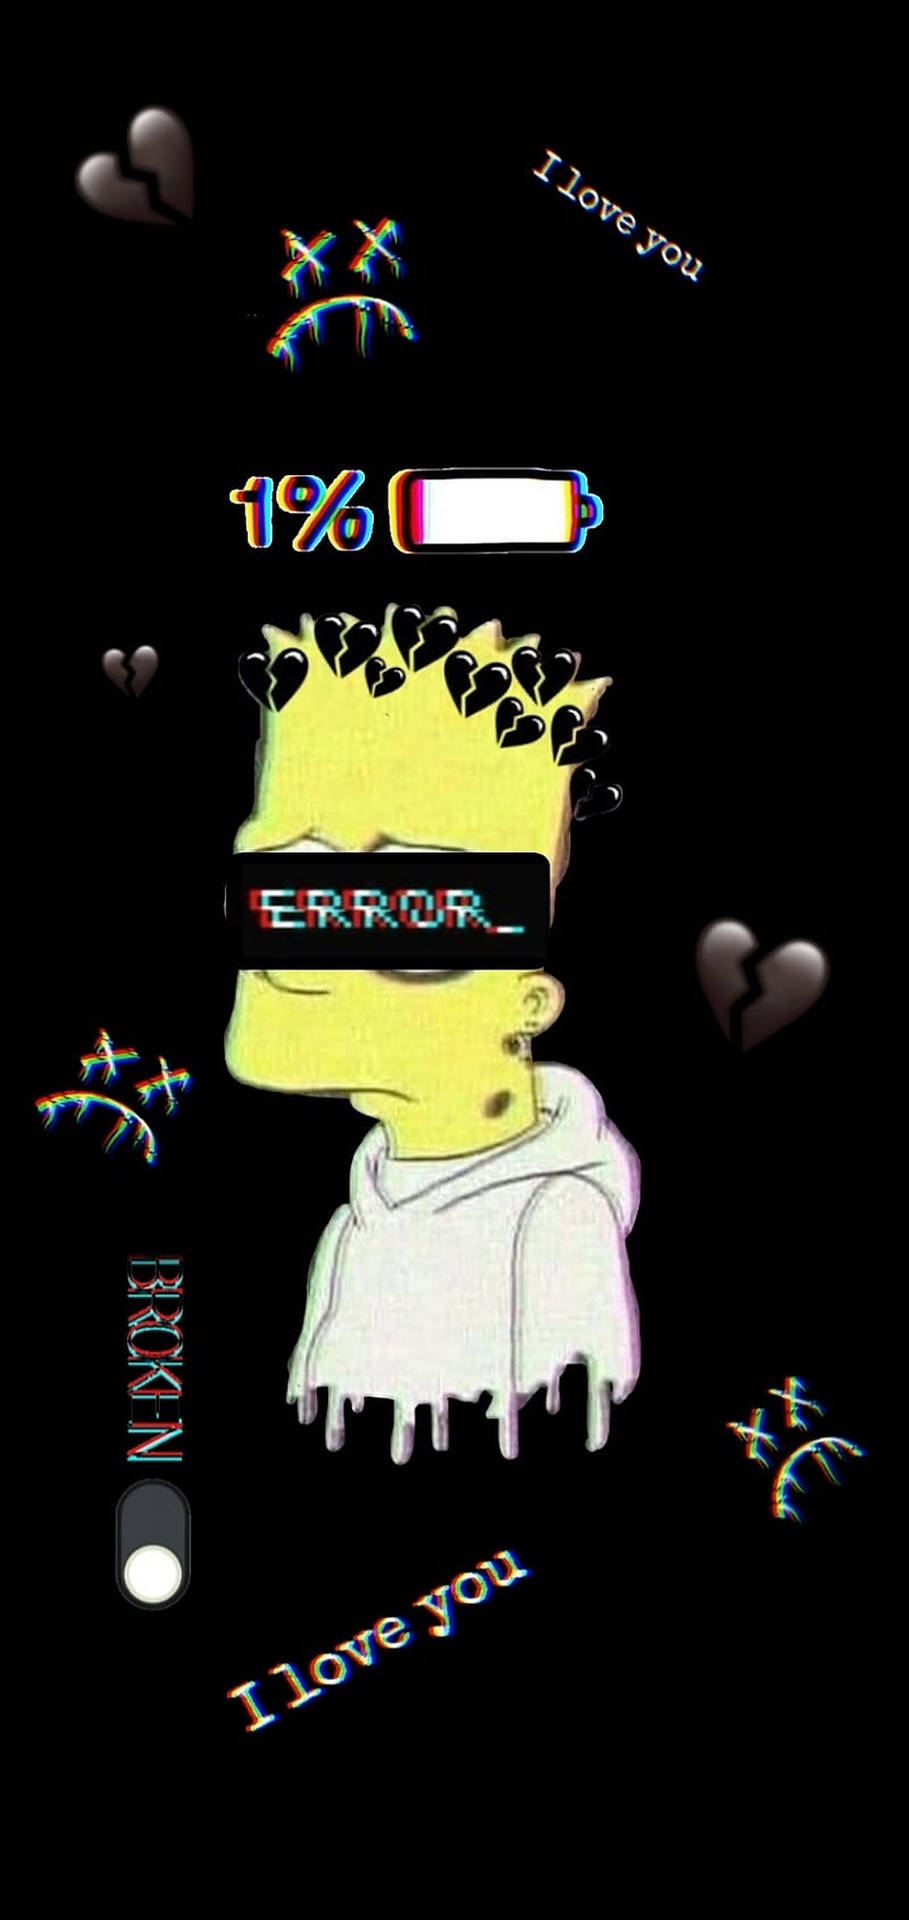 Sad Bart Simpsons Battery Percentage